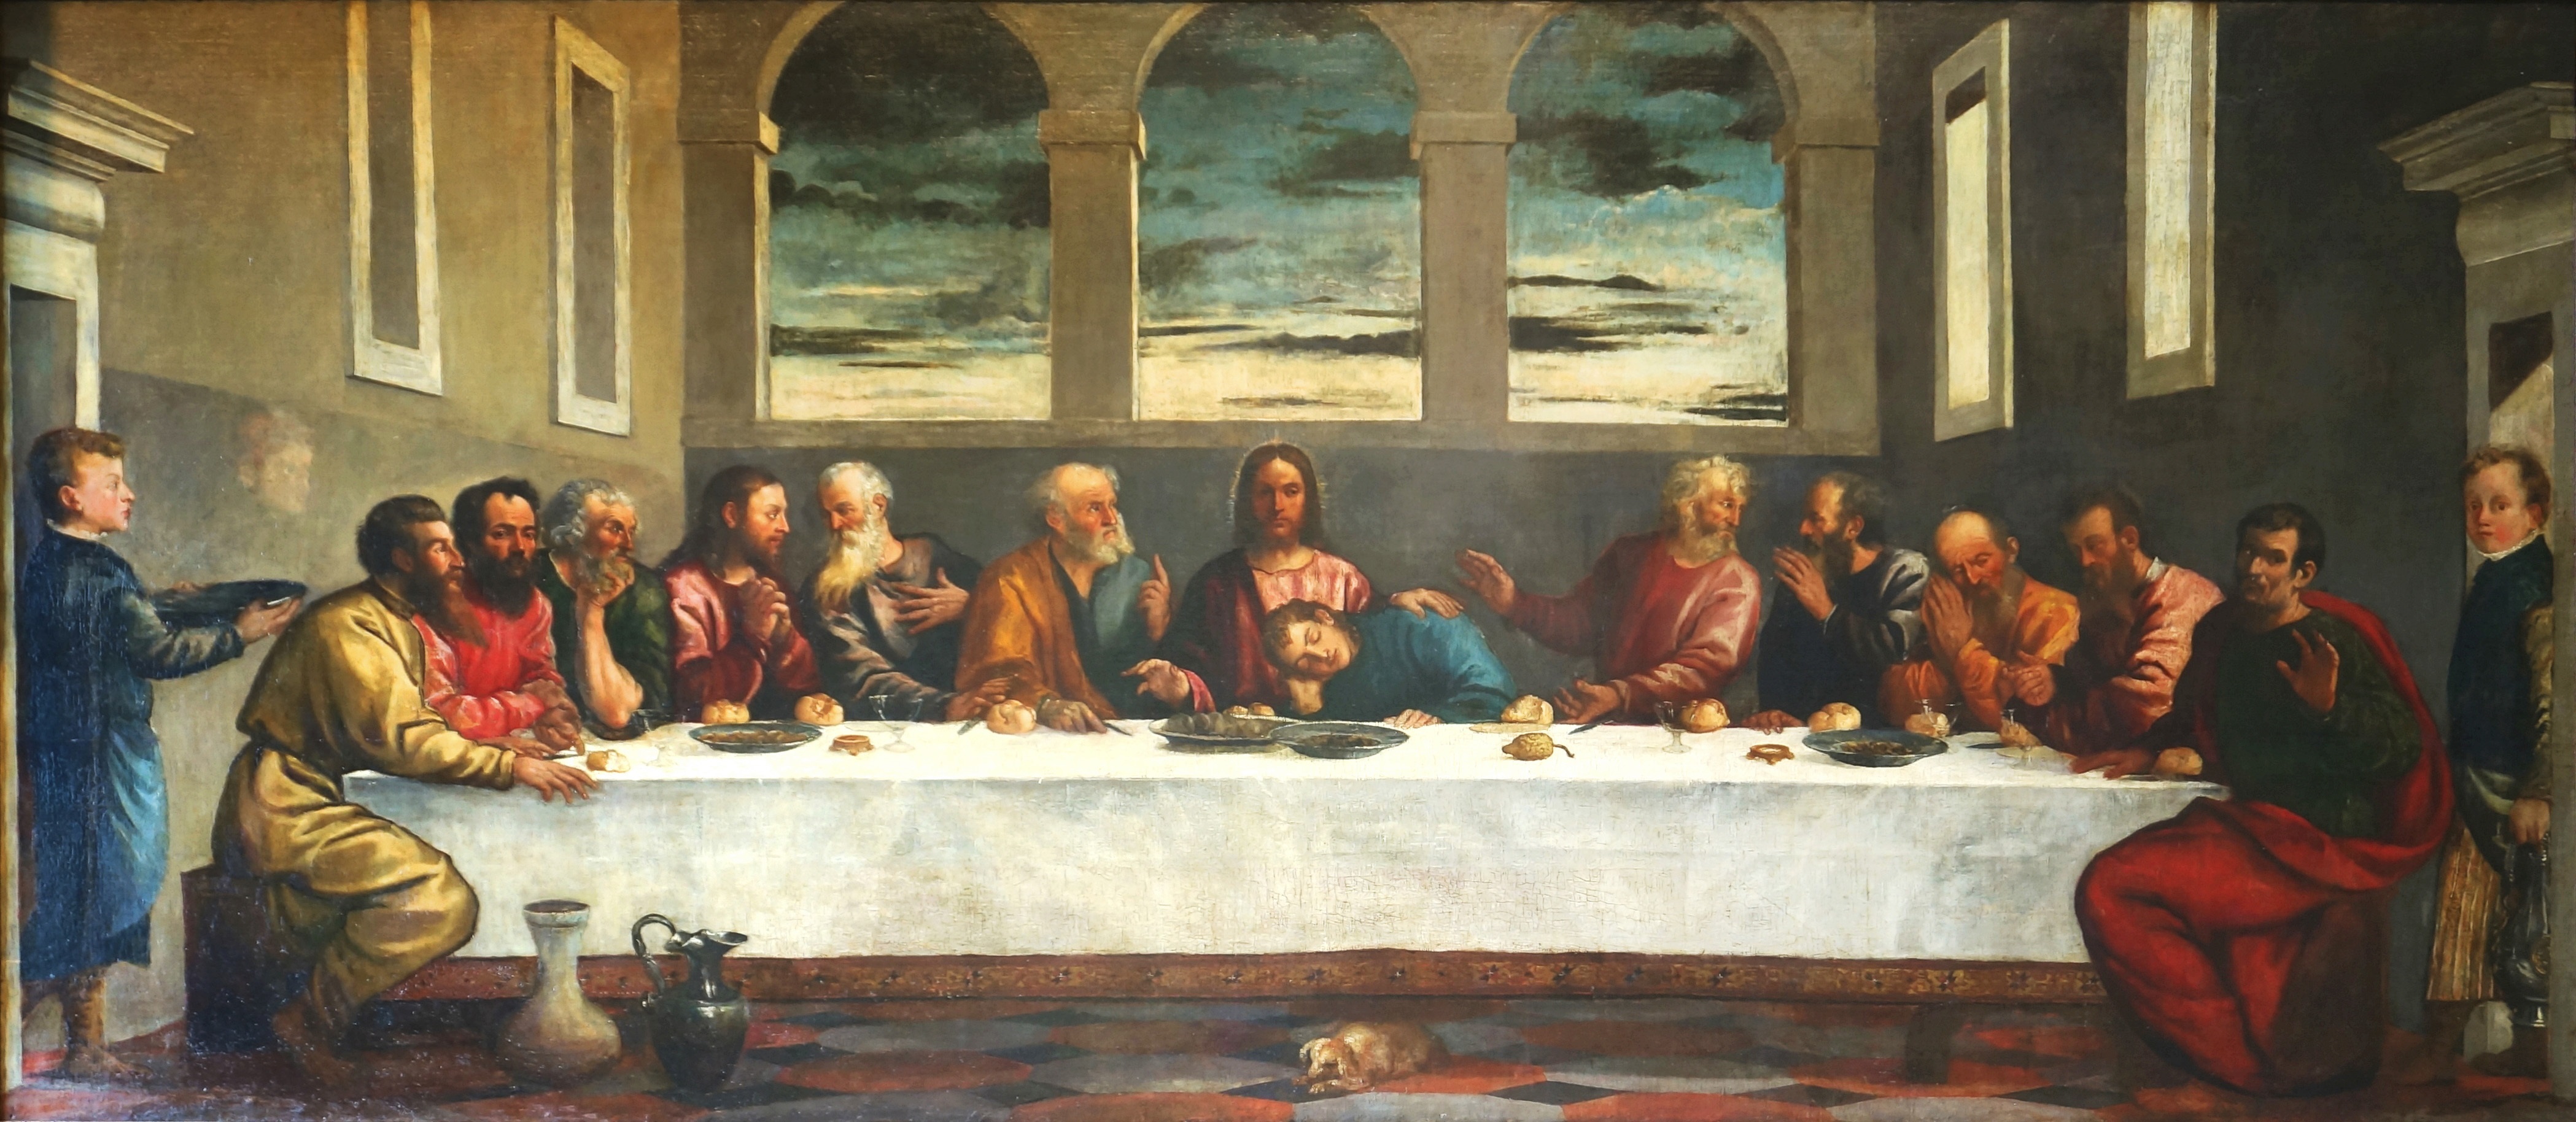 イエスと12使徒の最後の晩餐 彫像 彫刻/ カトリック教会 祭壇 新約聖書